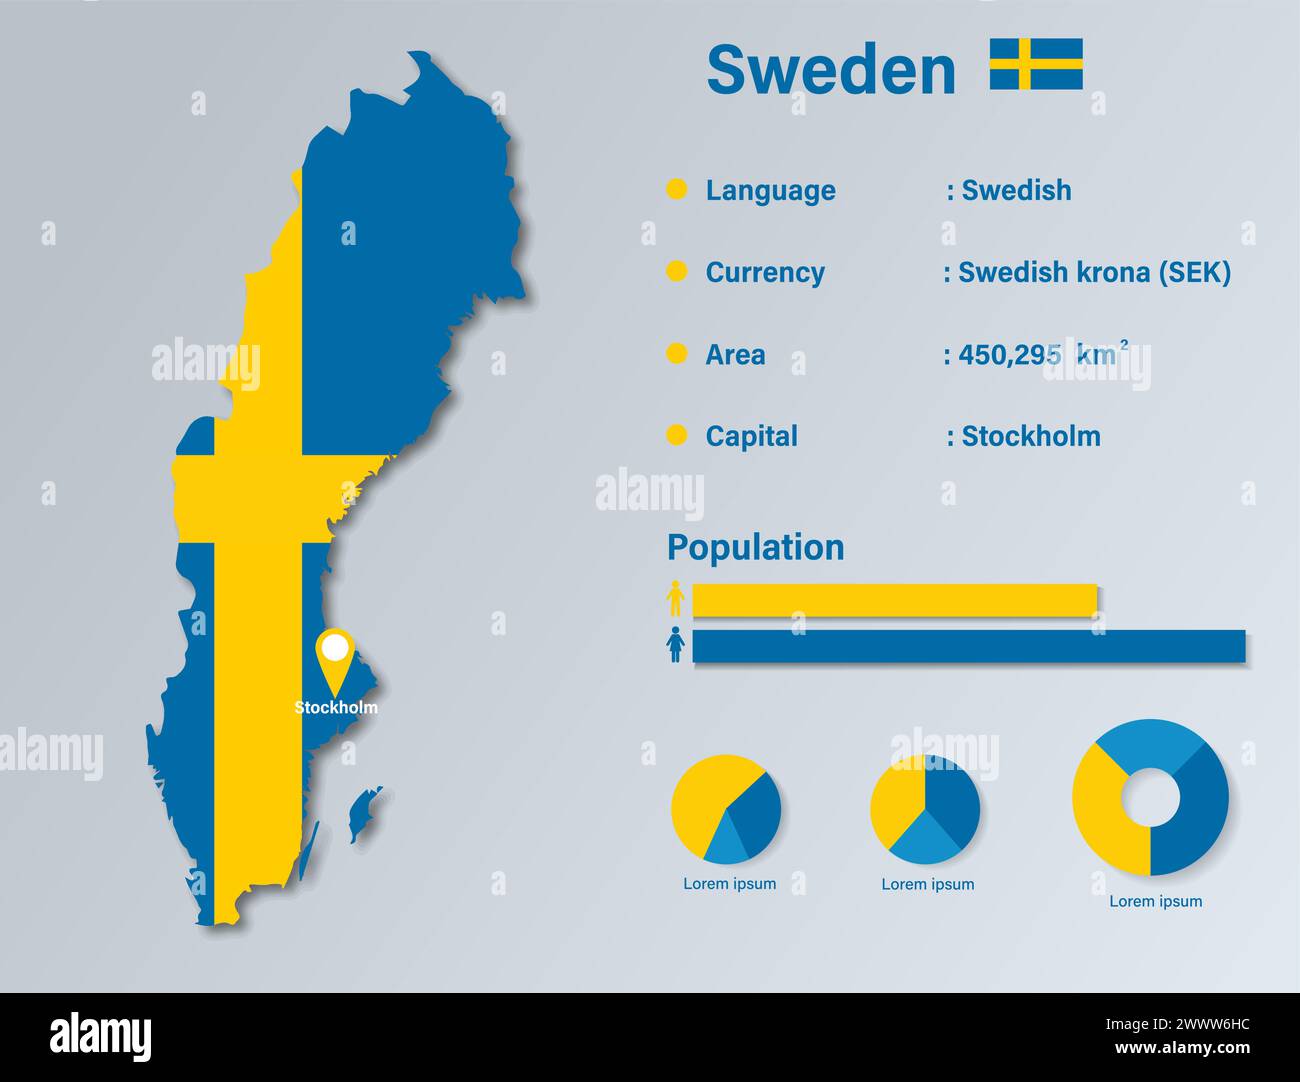 Sweden Infographic Vector Illustration, Sweden Statistical Data Element, Sweden Information Board With Flag Map, Swedia Map Flag Flat Design Stock Vector